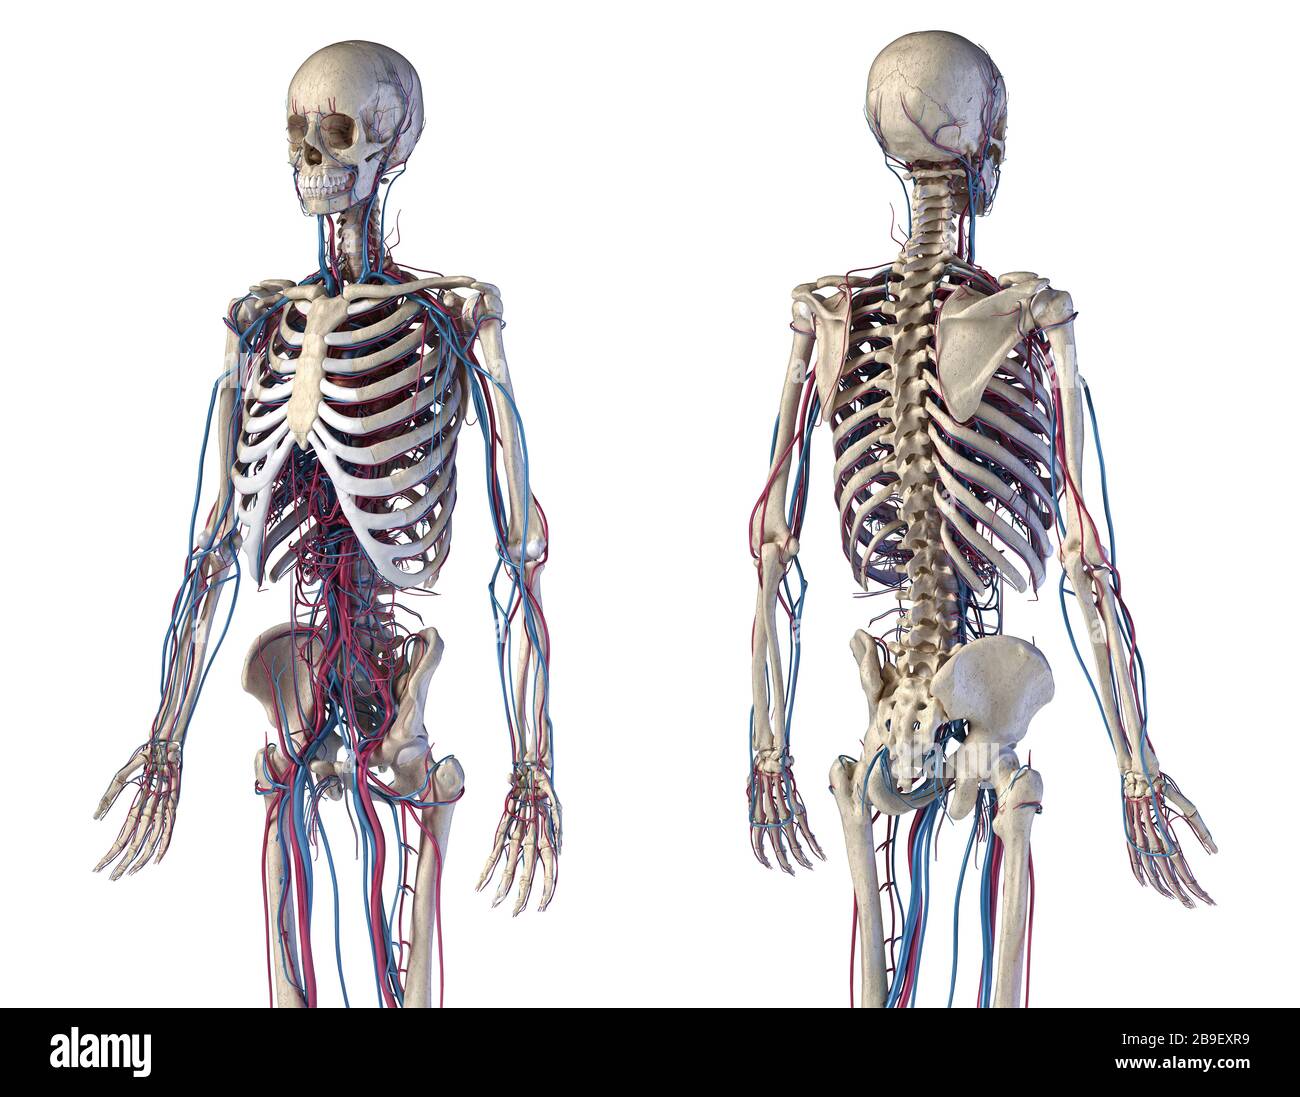 Vorder- und Rückansicht von menschlichen Skelett- und kardiovaskulären Systemen, weißer Hintergrund. Stockfoto